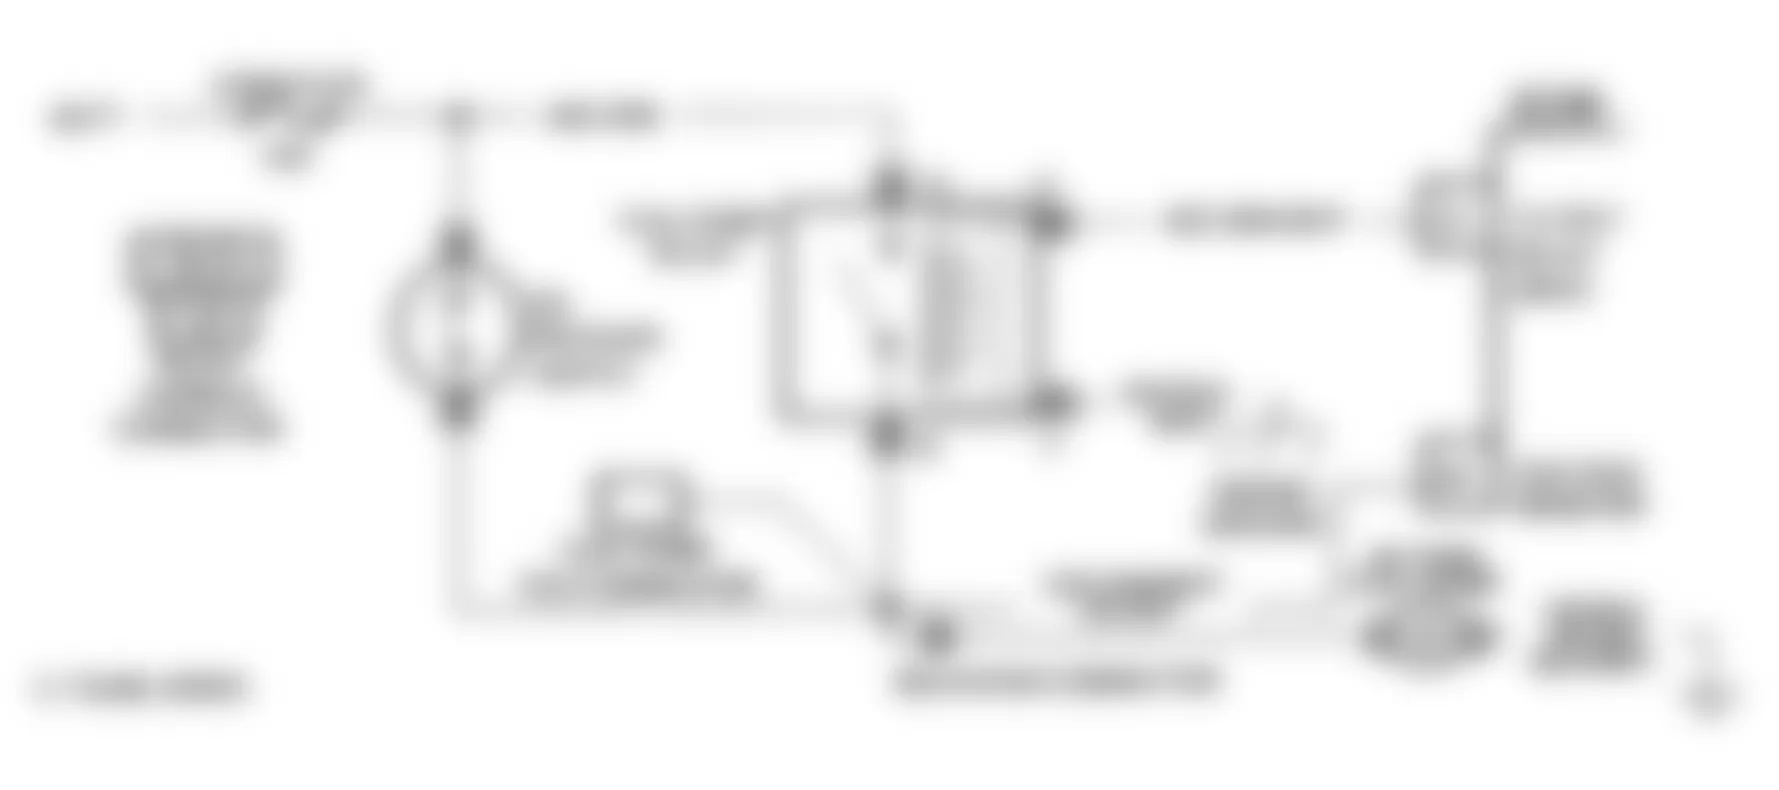 GMC Sonoma Syclone 1991 - Component Locations -  Code 54 Schematic (Astro, Safari) Fuel Pump Circuit